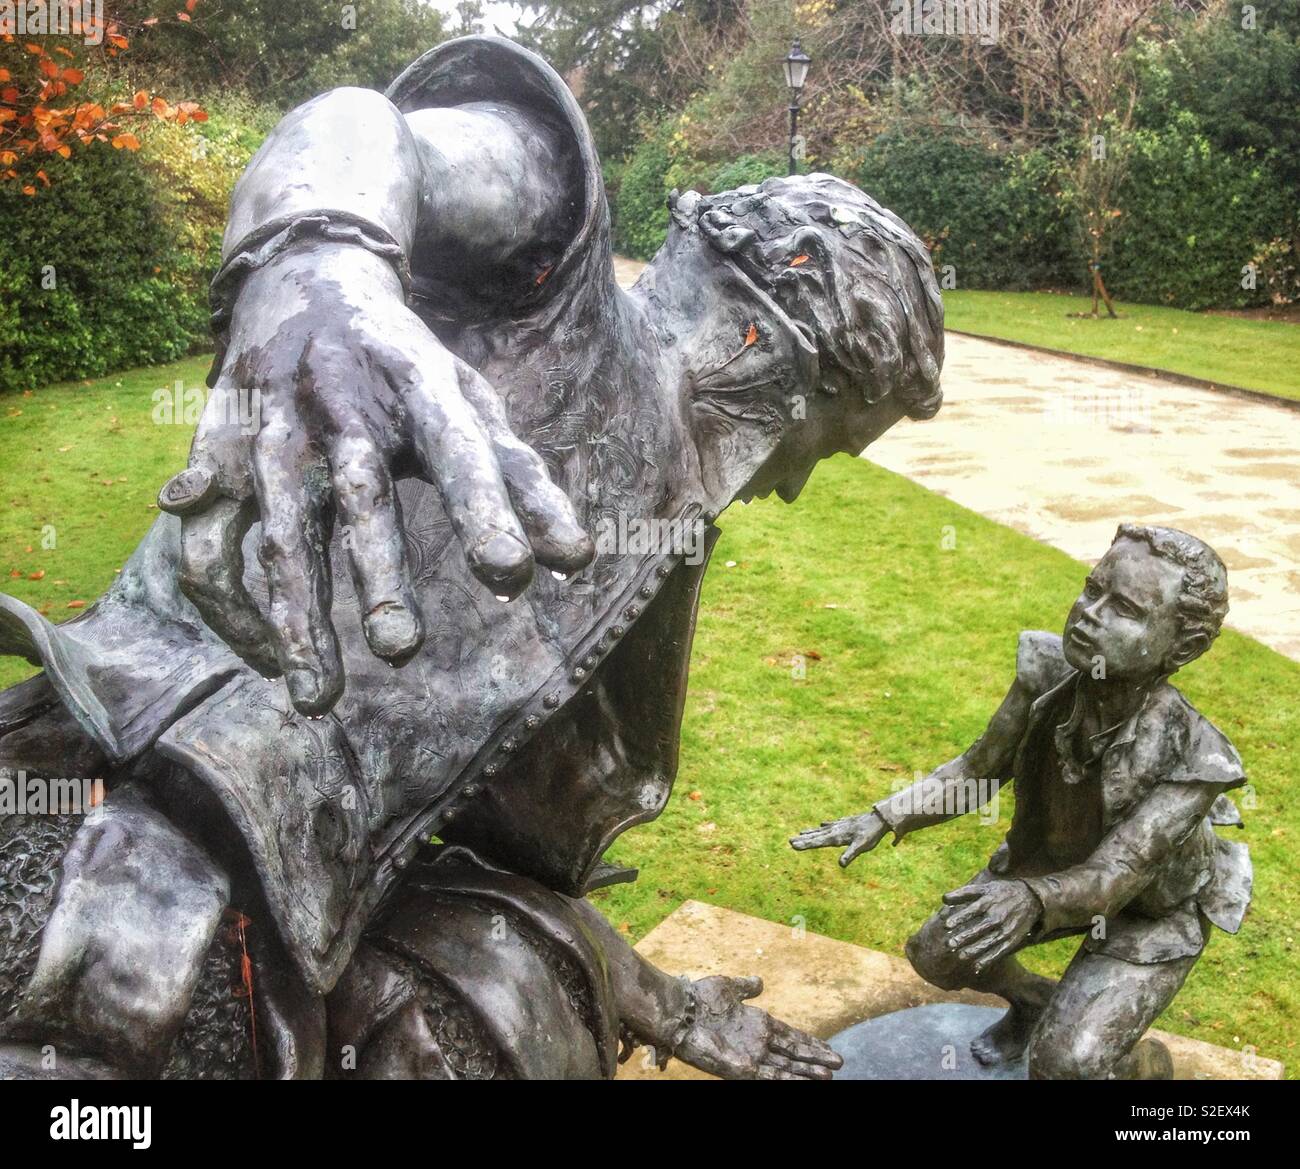 Dettaglio della scultura di Edward Alleyn, Elizabethan attore e imprenditore, nei giardini di Dulwich College gli ospizi di carità, Londra Foto Stock